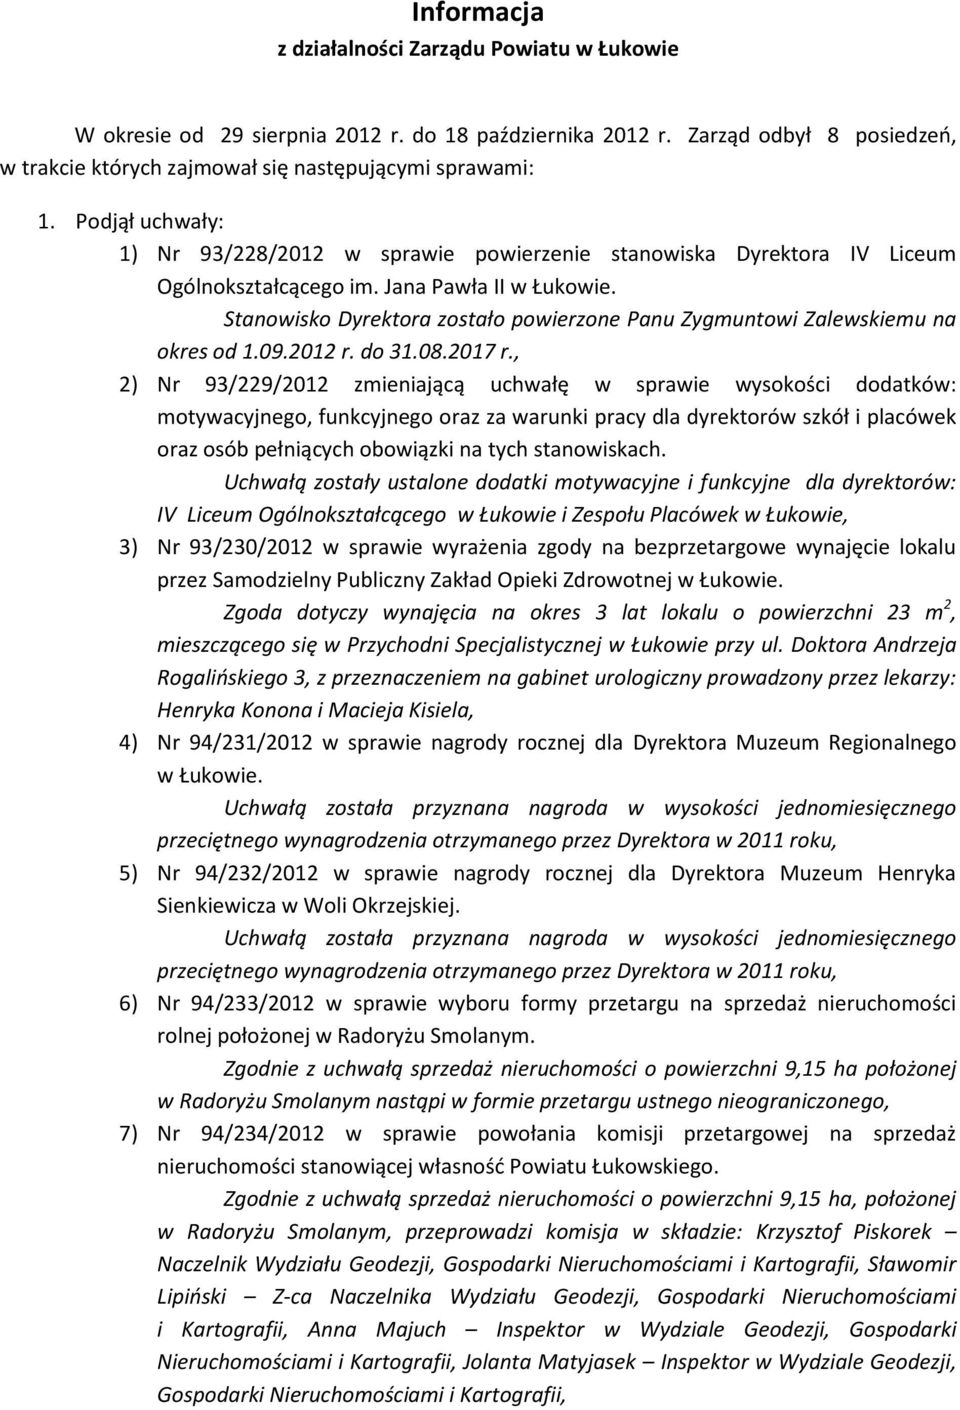 Stanowisko Dyrektora zostało powierzone Panu Zygmuntowi Zalewskiemu na okres od 1.09.2012 r. do 31.08.2017 r.